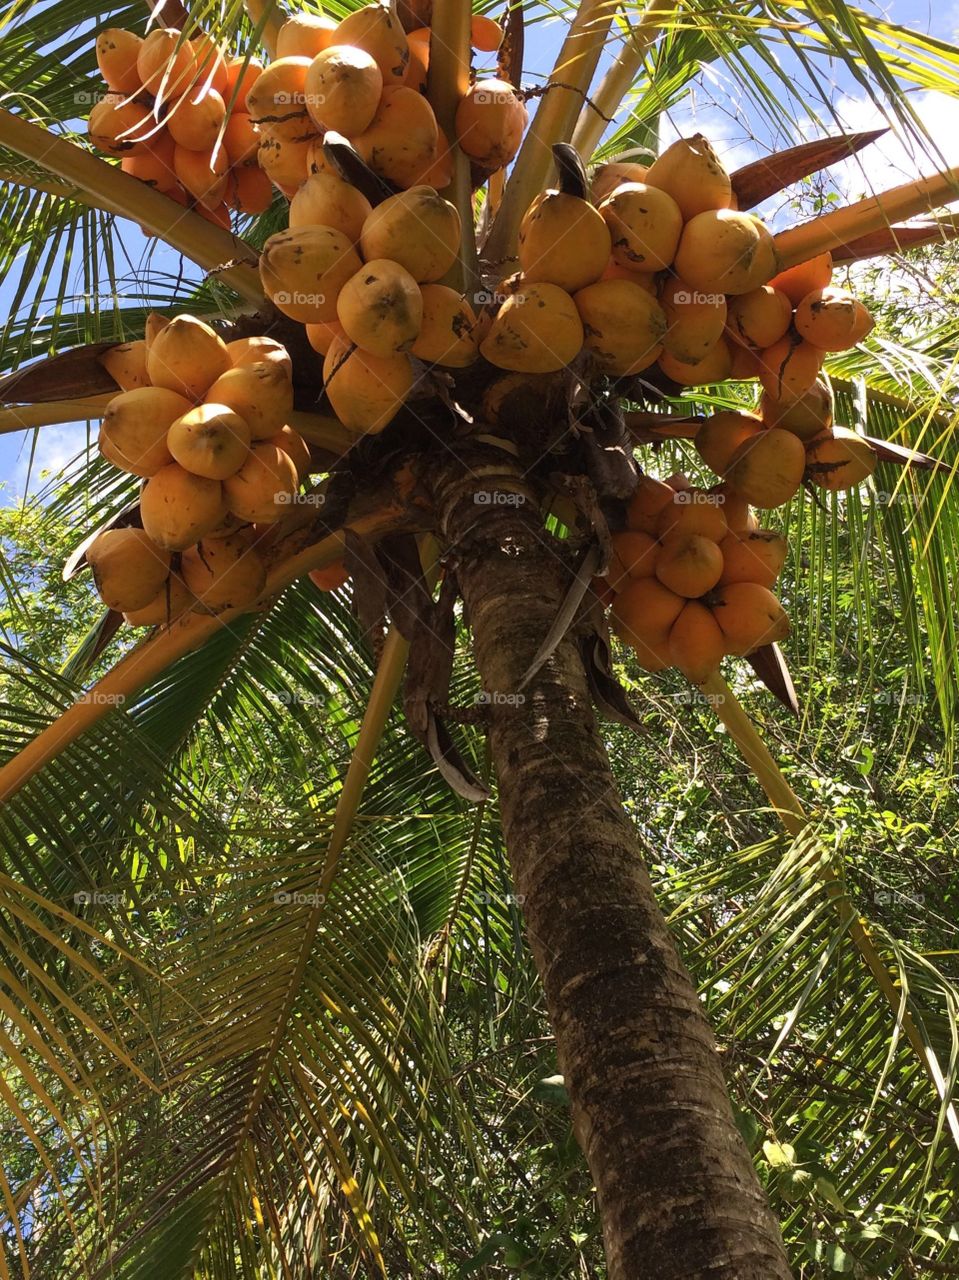 Climb the Mango tree. Mango tree in homestead Florida 